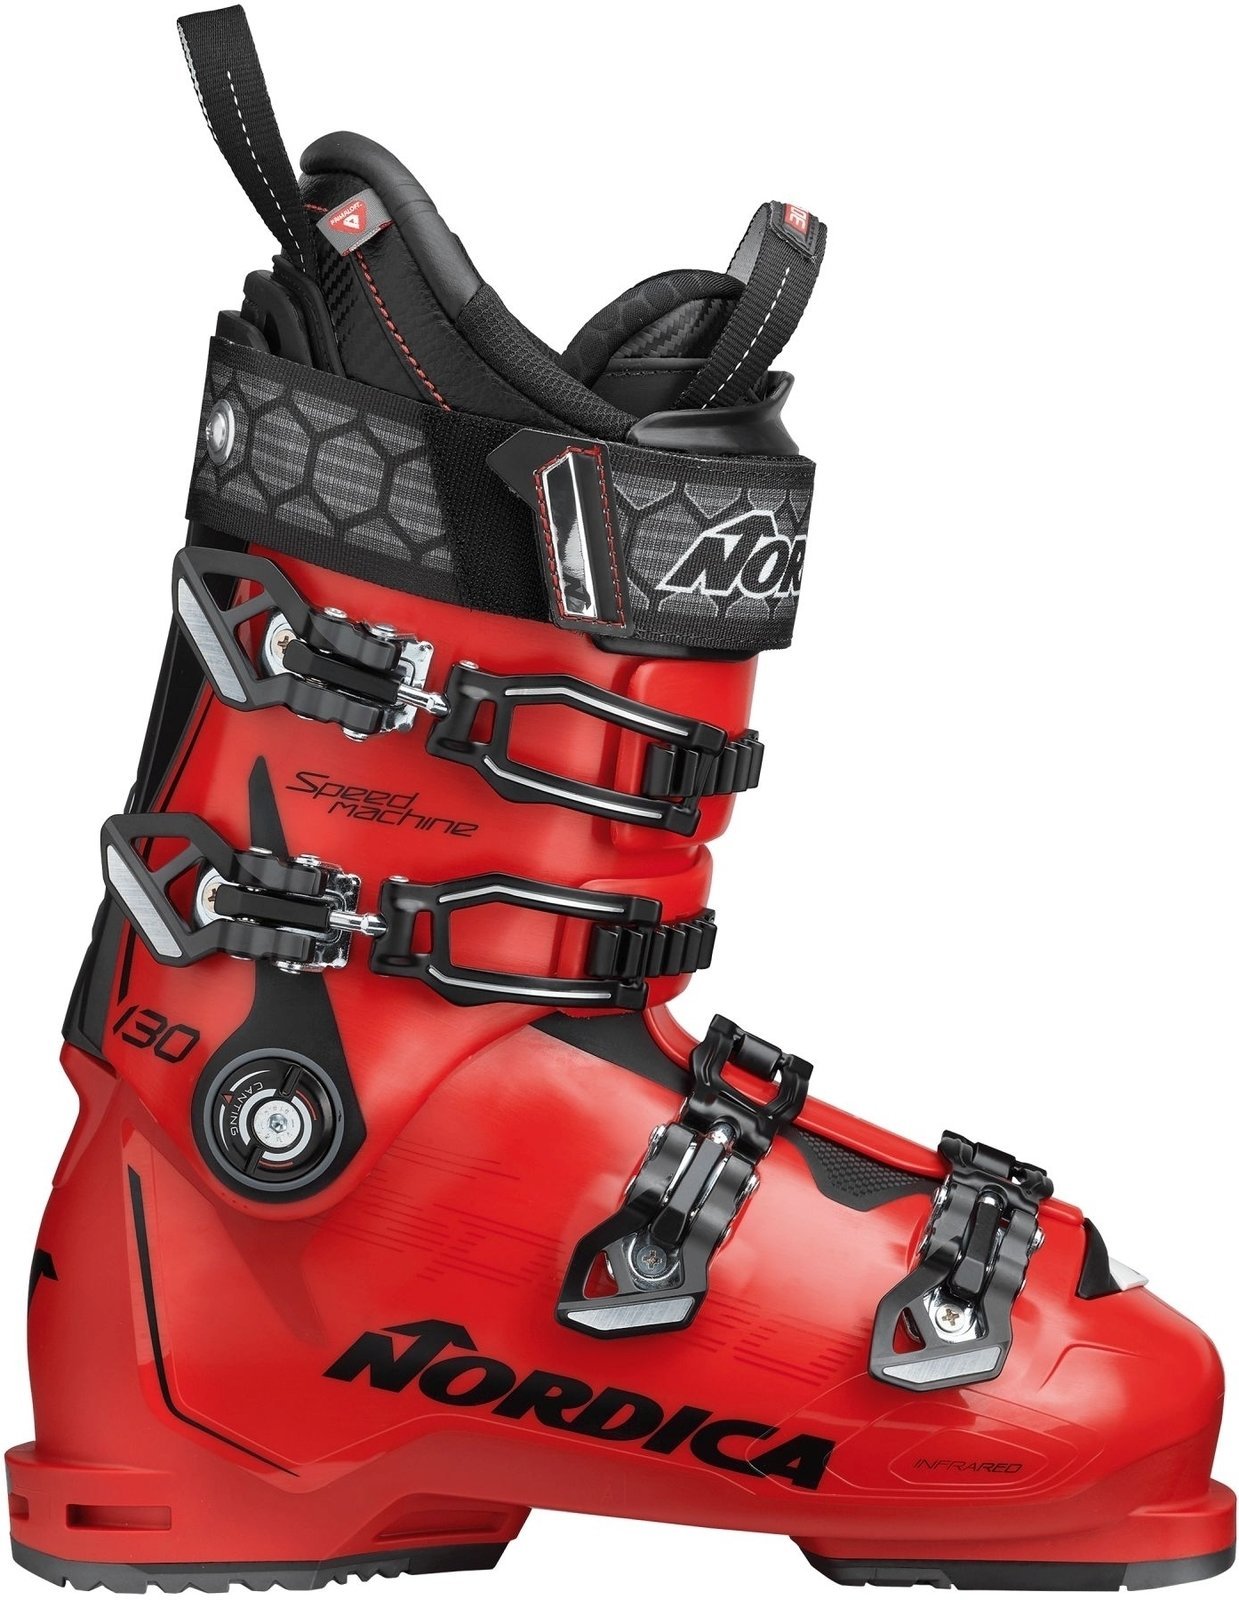 Alpineskischoenen Nordica Speedmachine Red-Zwart 275 Alpineskischoenen